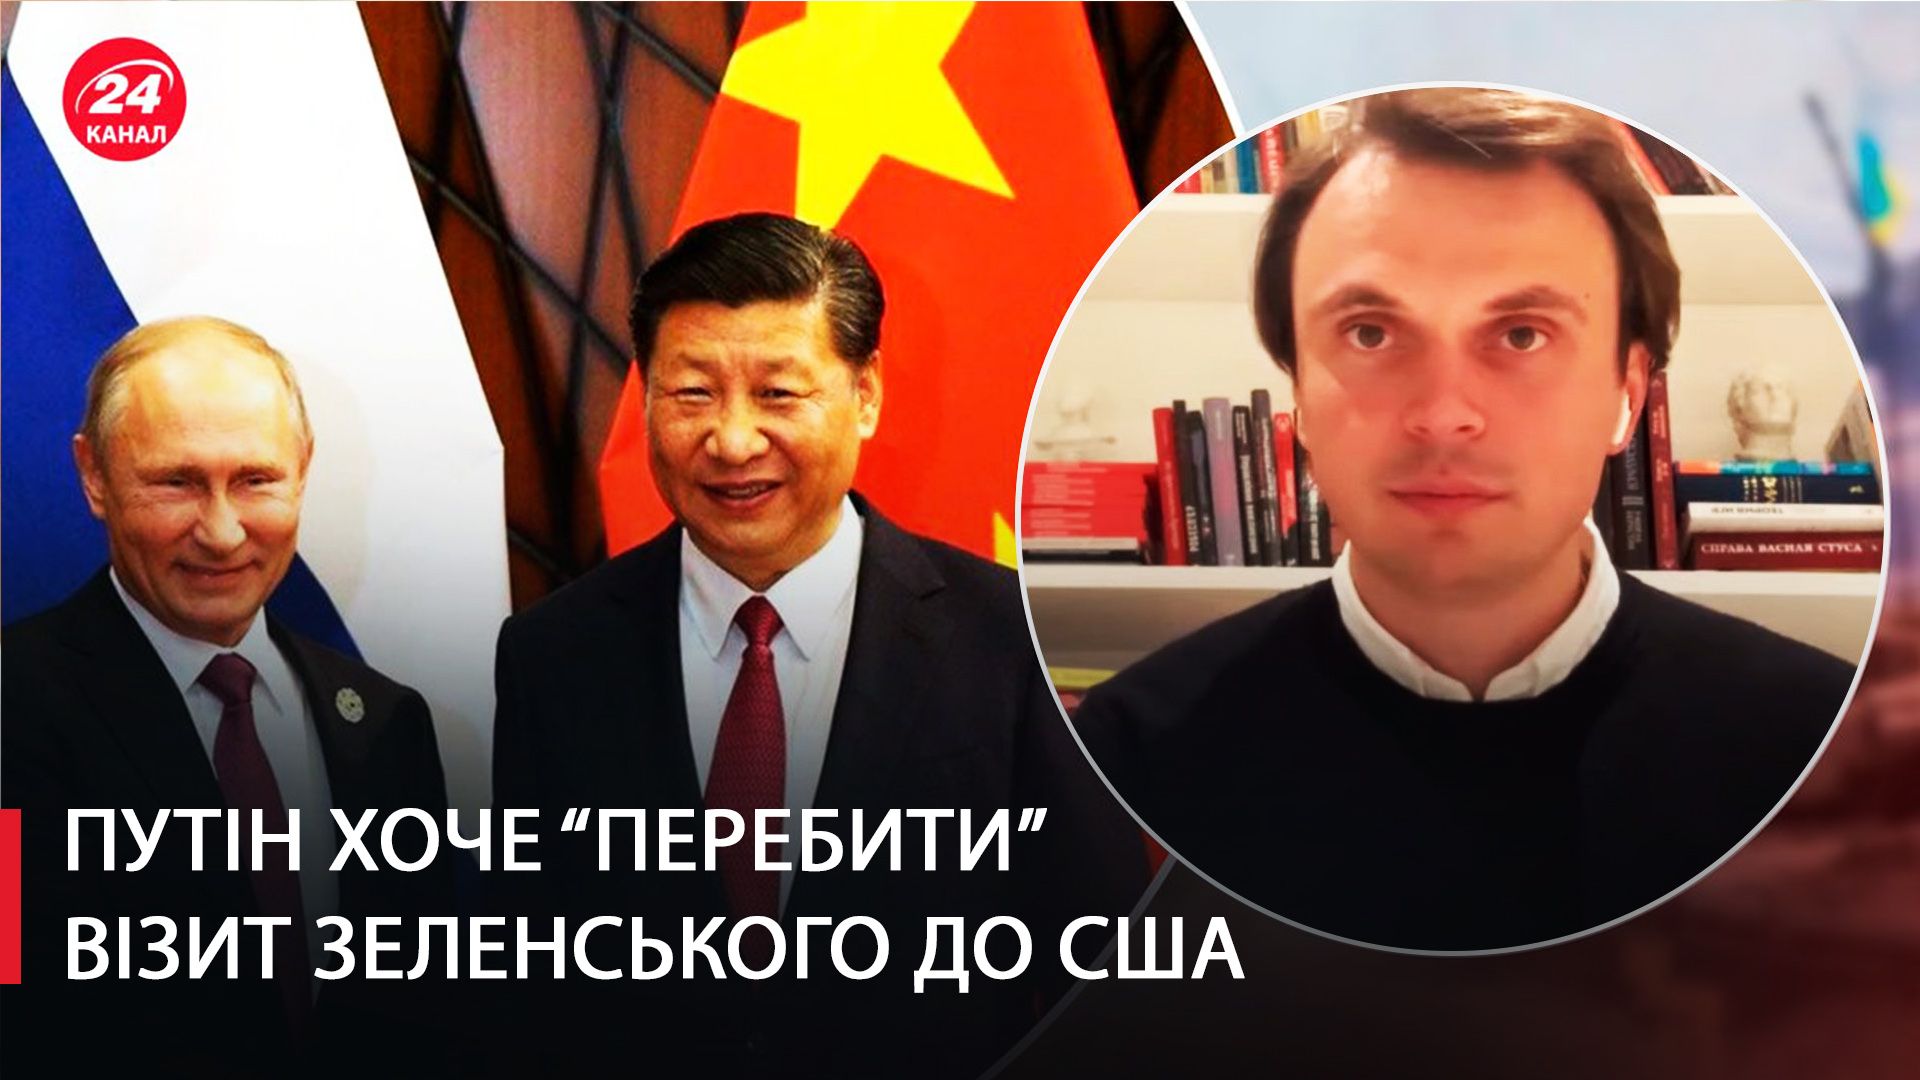 Давмдюк о возможной встрече Путина с Си Цзиньпином